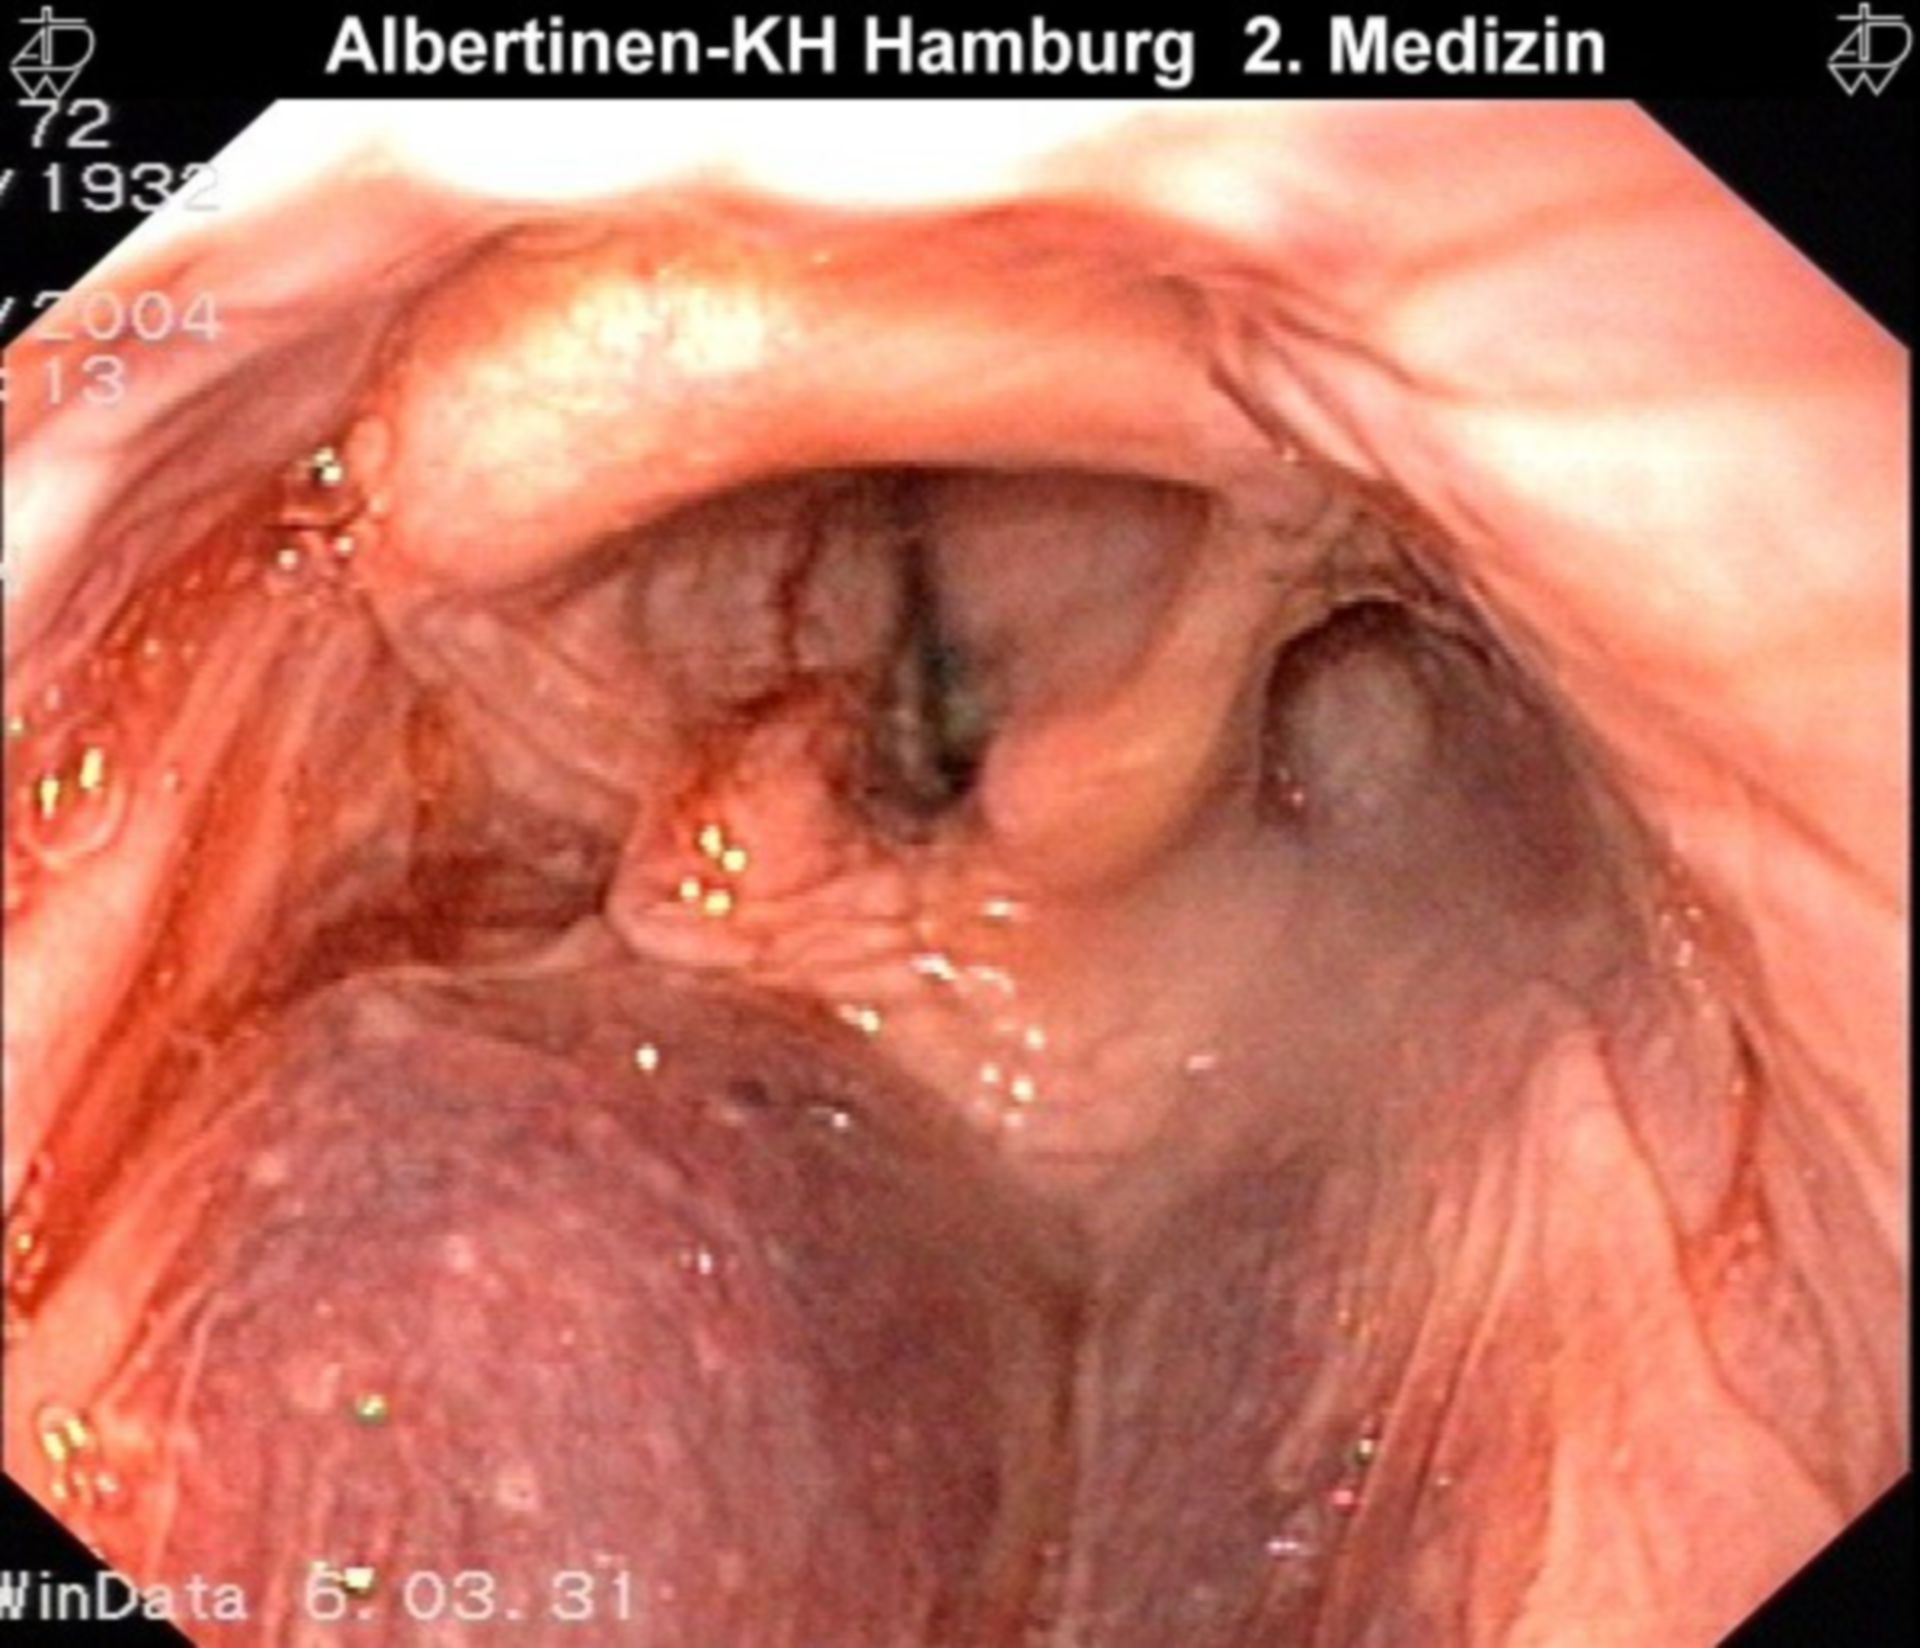 Hematoma of the larynx